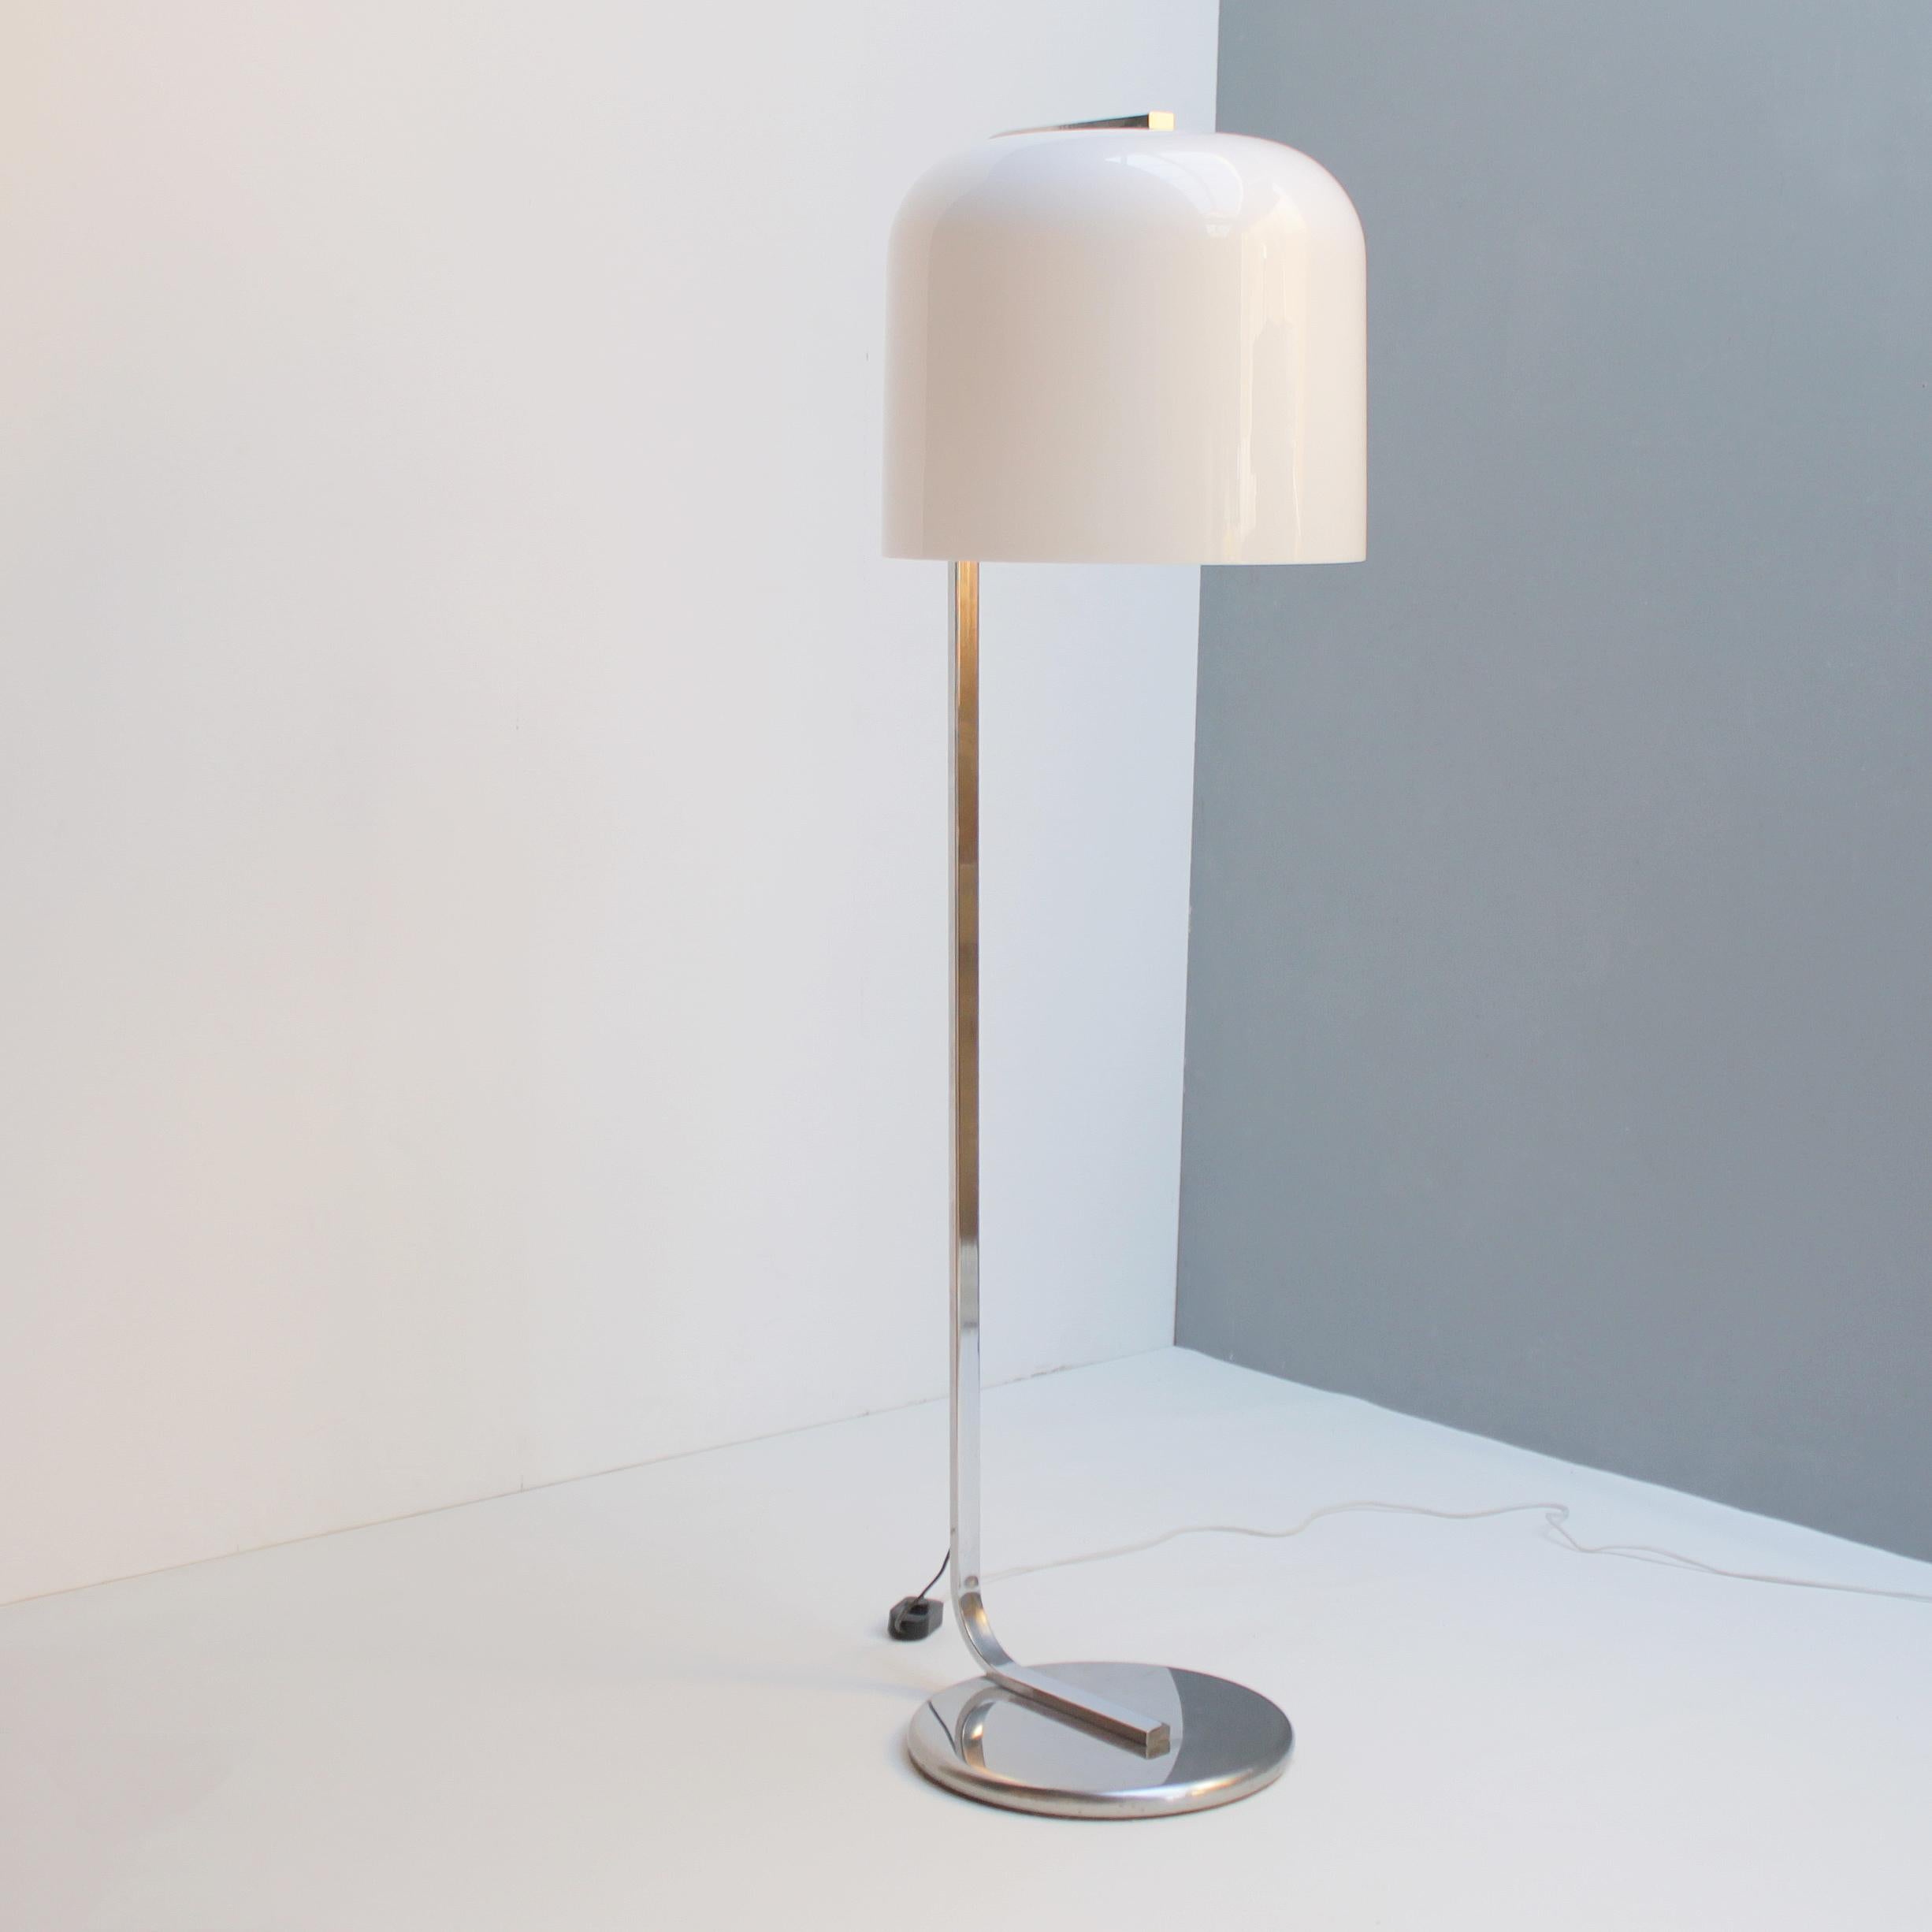 Chrome Italian Floor Lamp 'Alvise' by Luigi Massoni for Guzzini